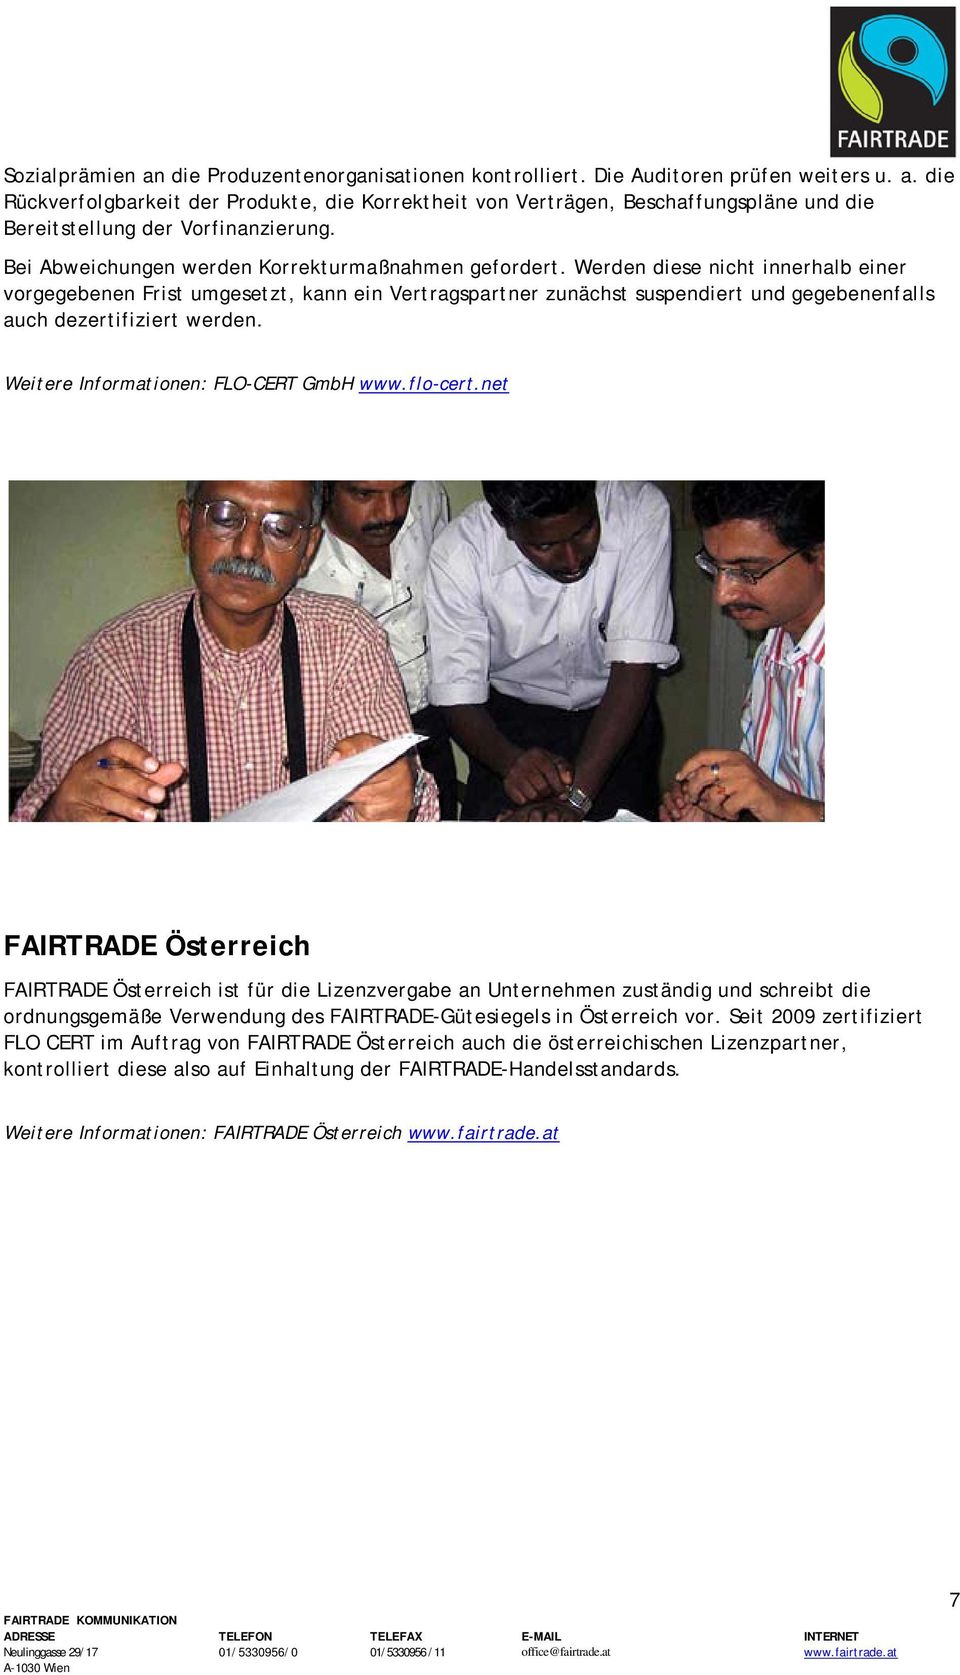 Fairtrade zertifizierungssystem im detail.